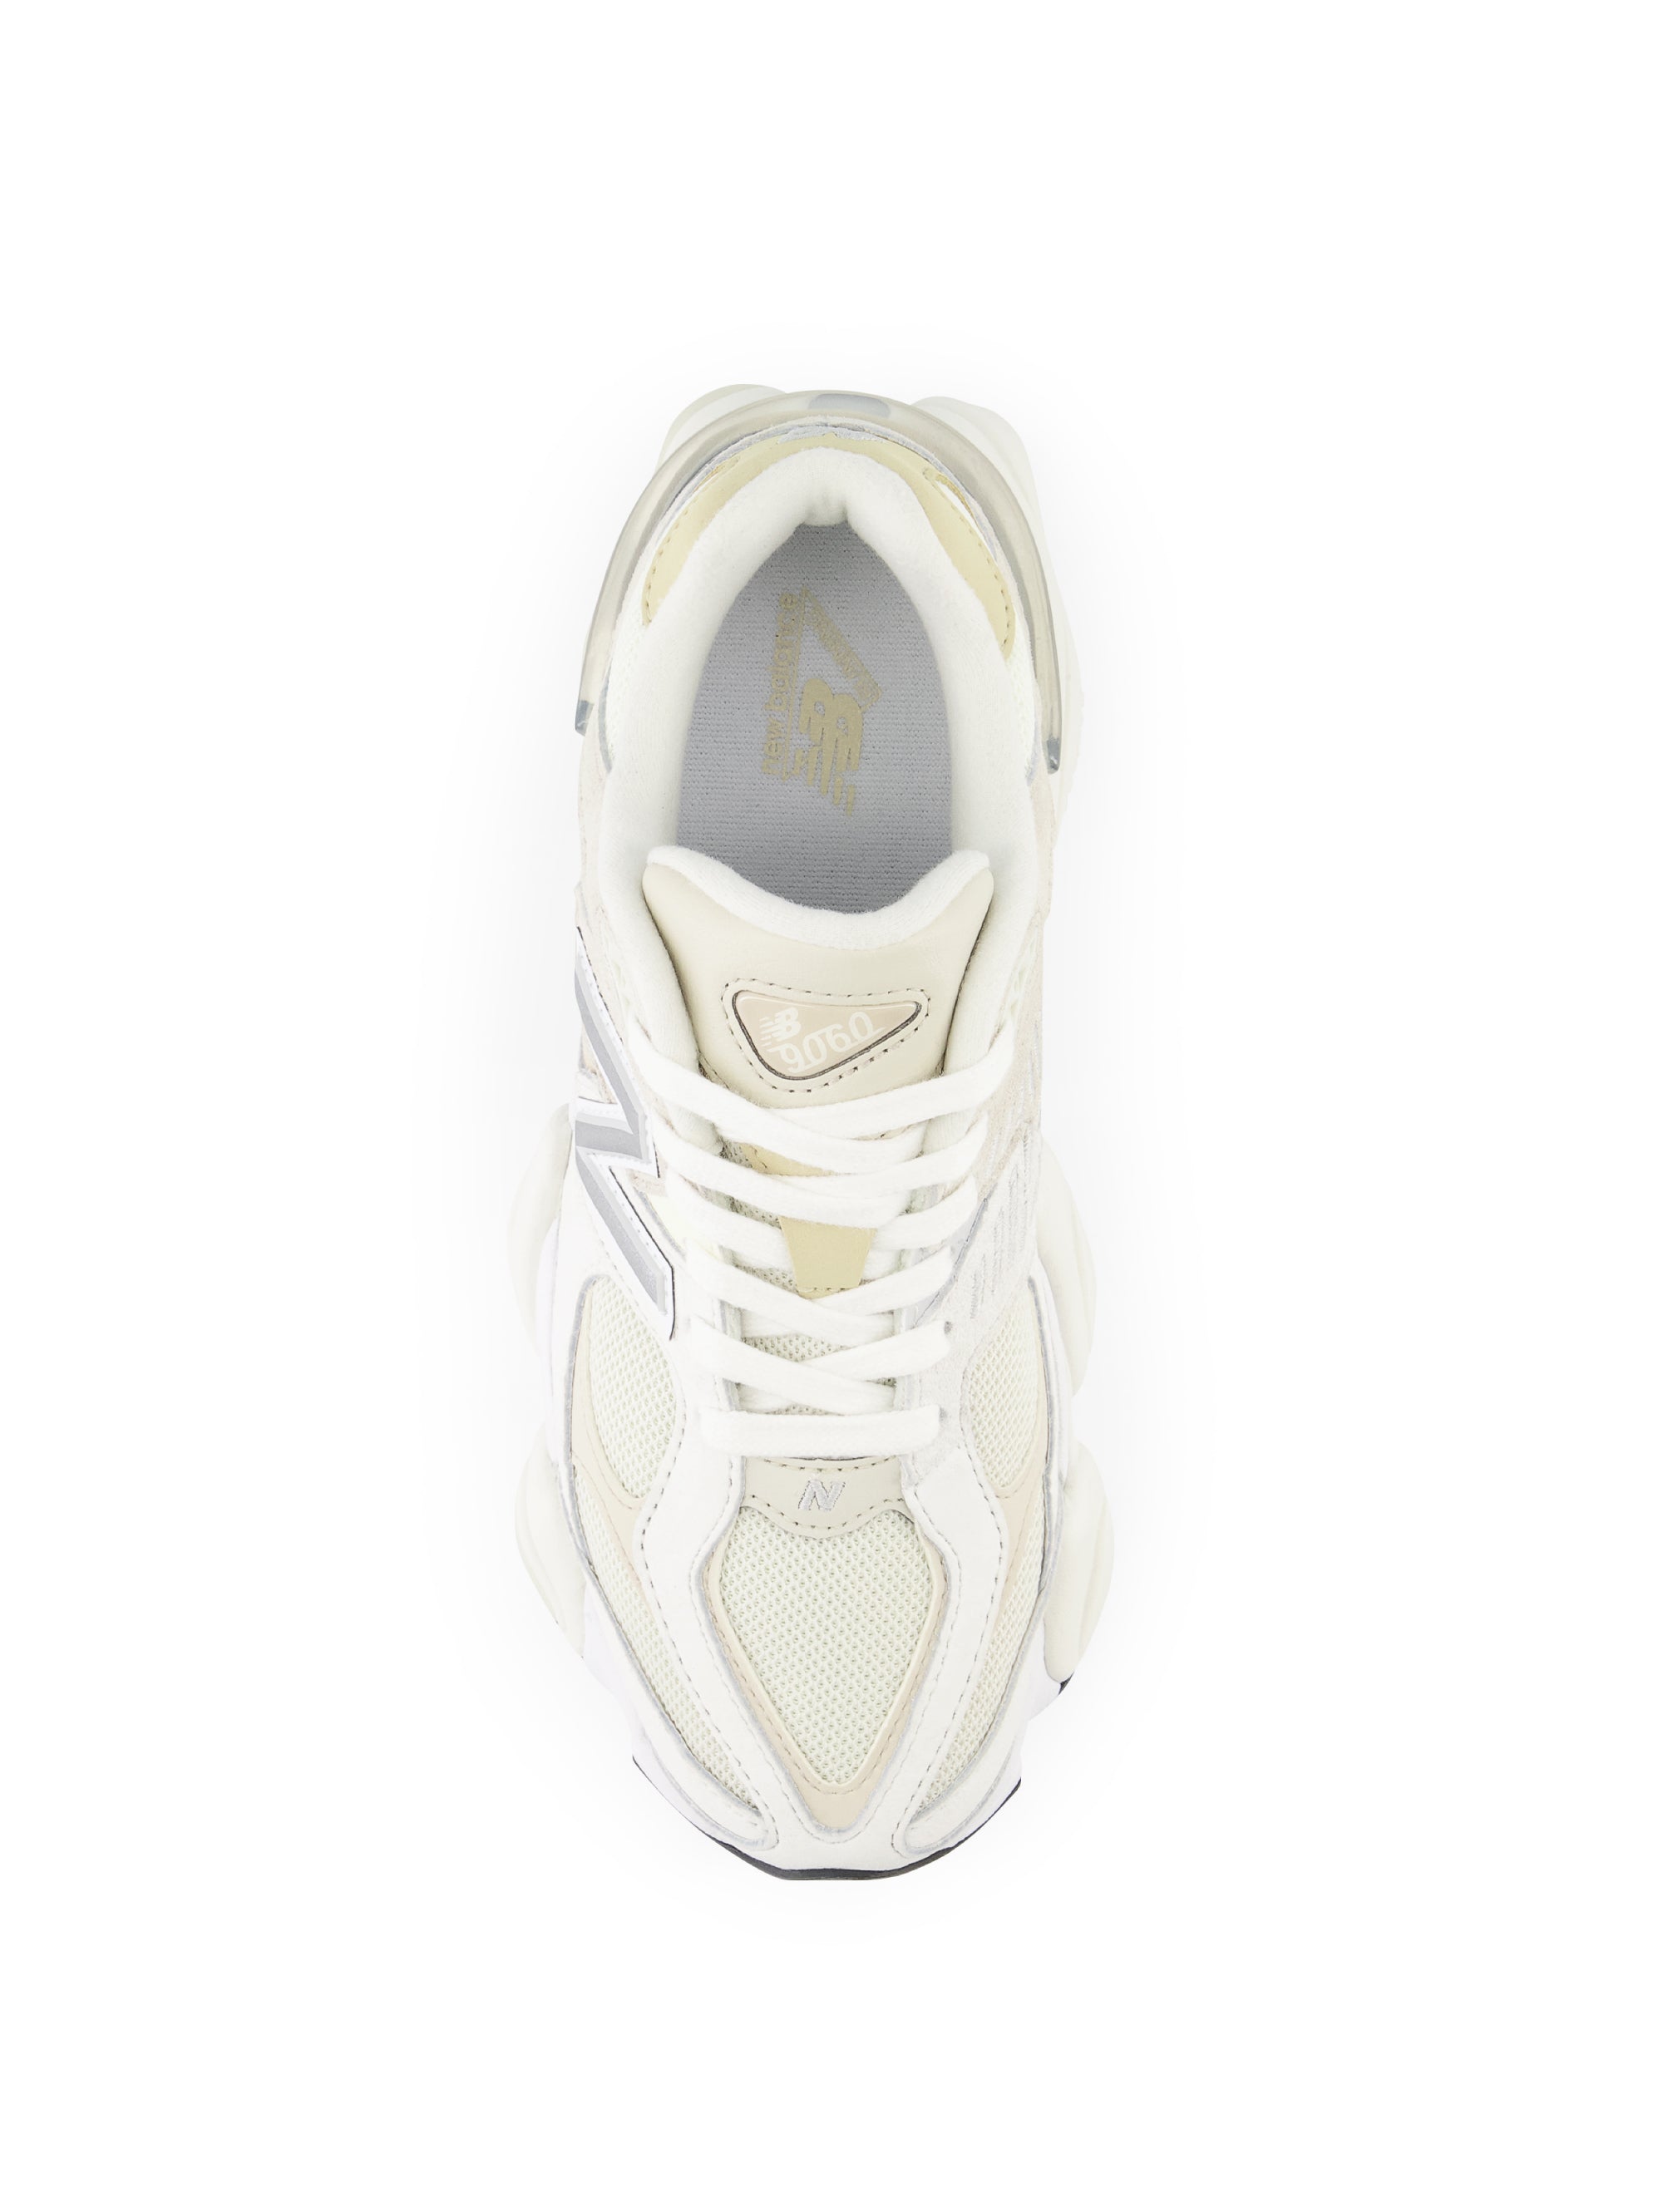 Futuristic 9060 White/Cream Women's Sneakers